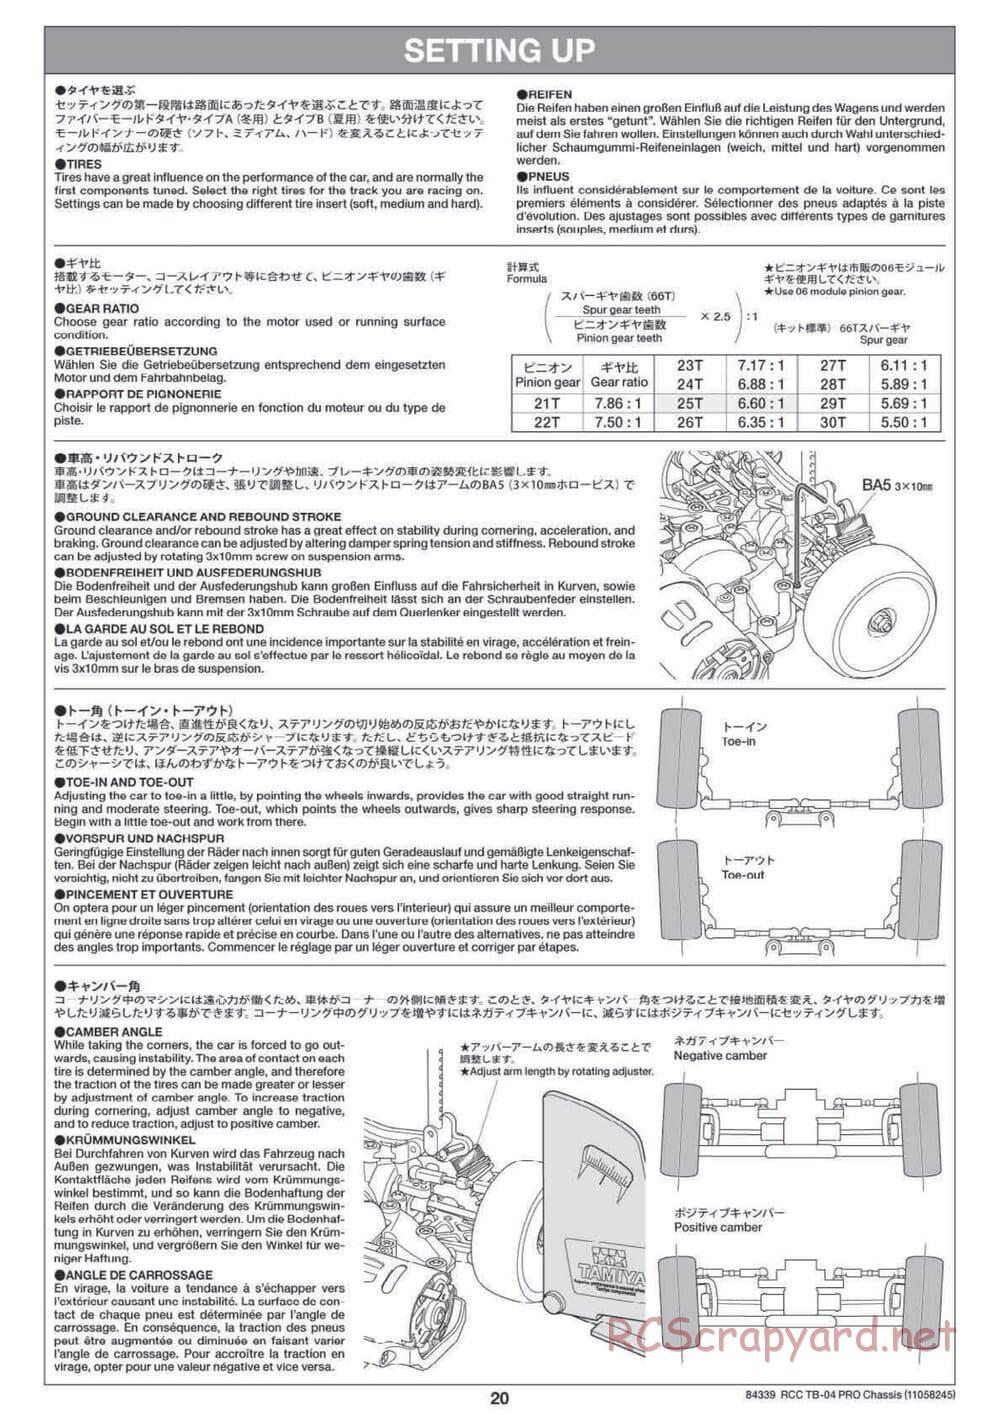 Tamiya - TB-04 Pro Chassis - Manual - Page 20